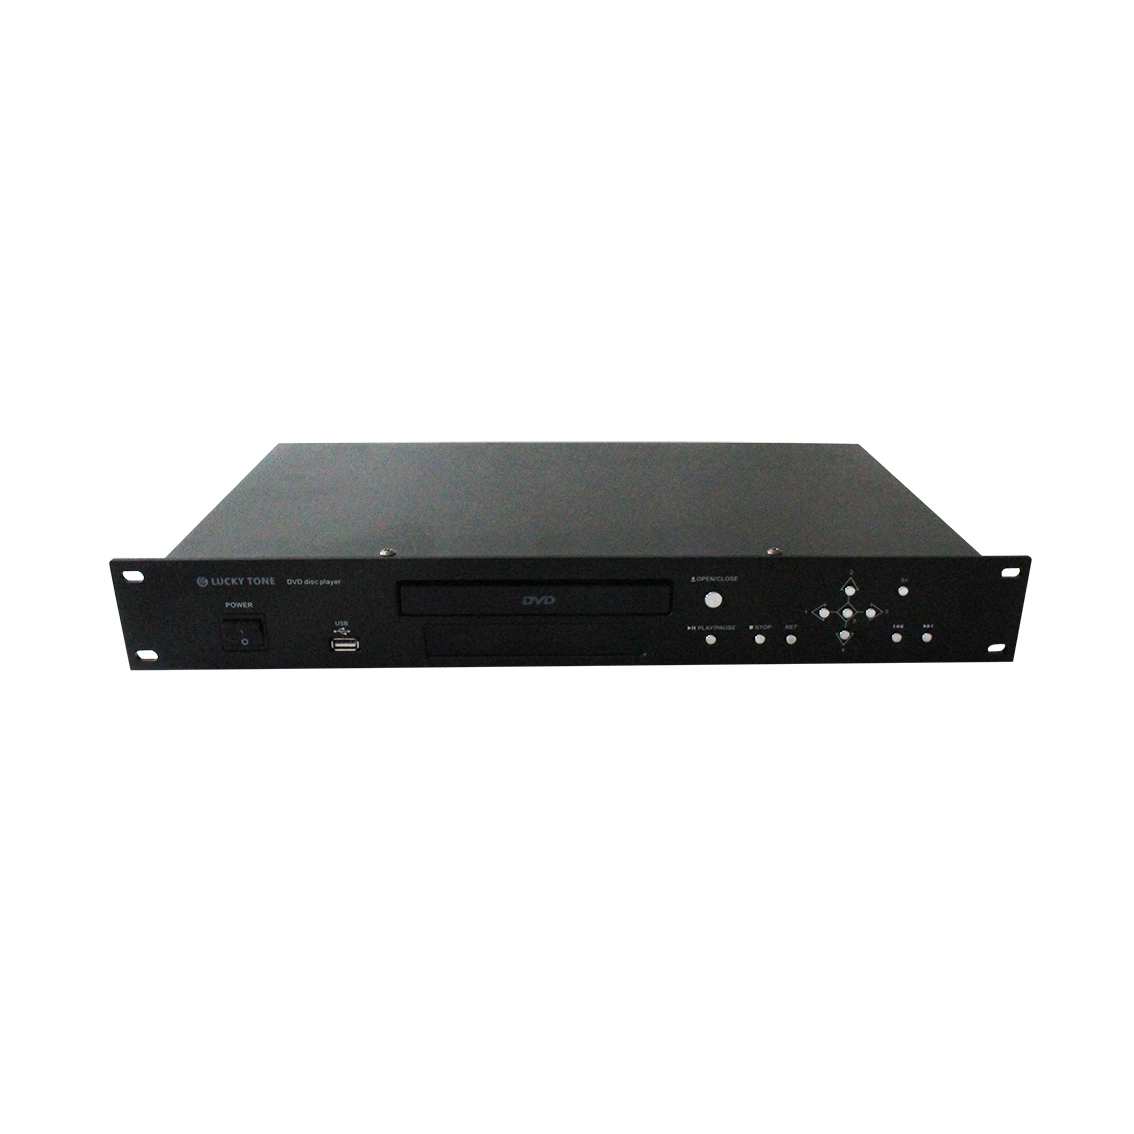 Lecteur de DVD audio avec port USB Sopport DVD, VCD, CD, HDCD, DIVX, SVCD MPEG4, NP3, WMA, disque au format CDR/RW